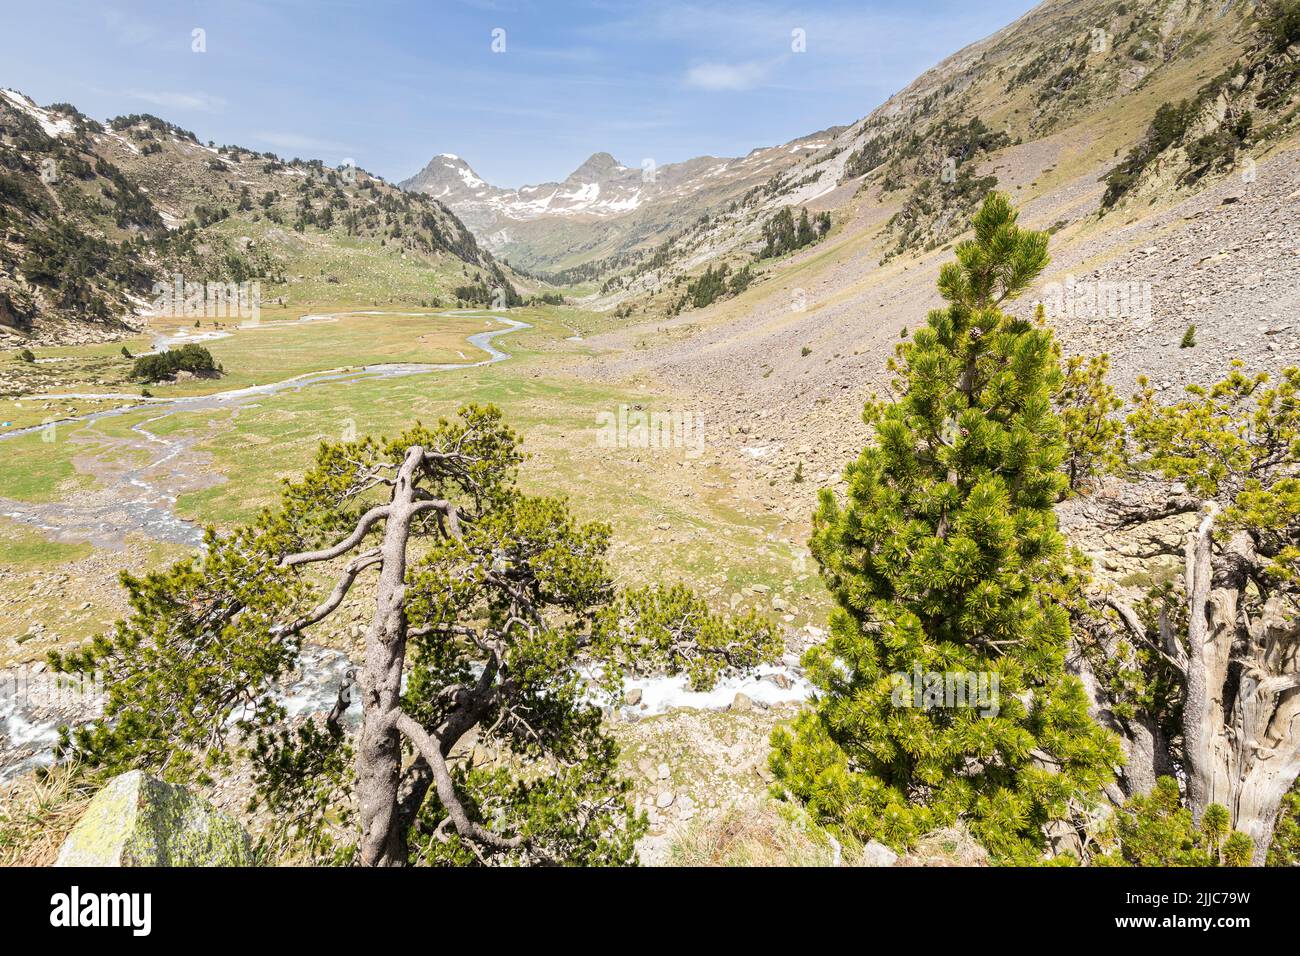 Plan de Aiguallut, Valle de Benasque, Natural Park of Posets-Maladeta, Huesca, Spain Stock Photo